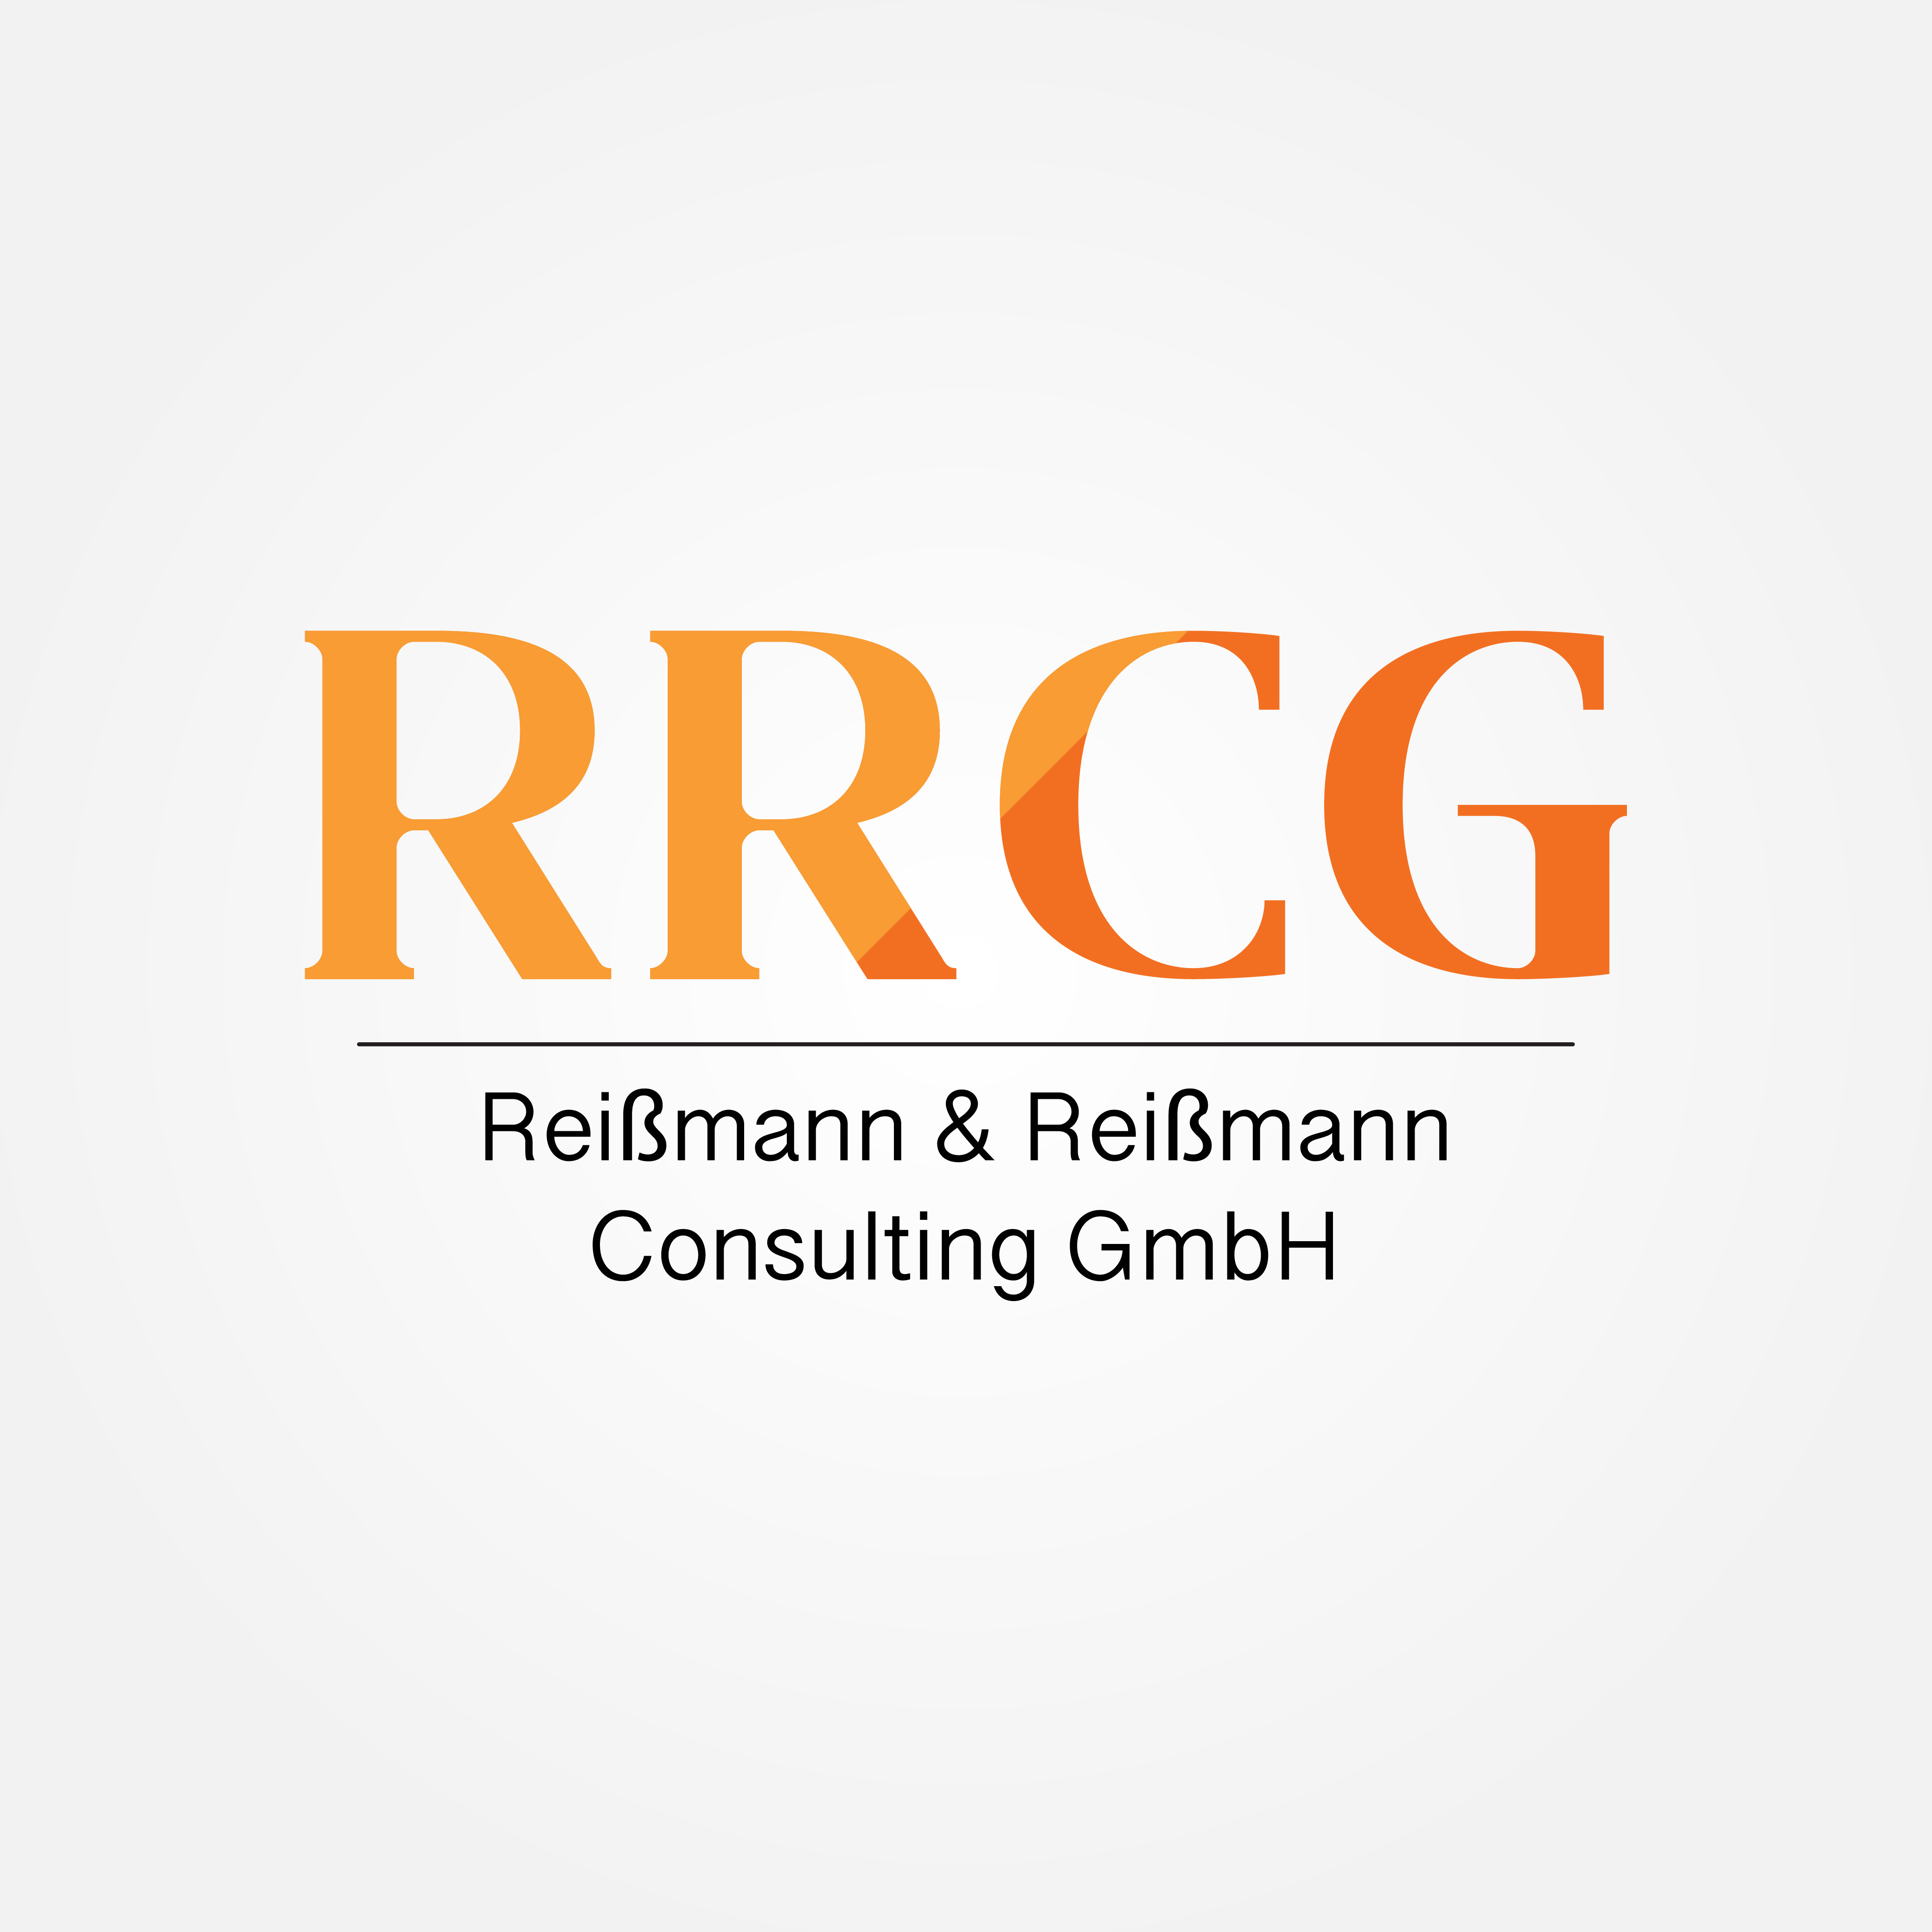 RRCG Reißmann & Reißmann Consulting GmbH